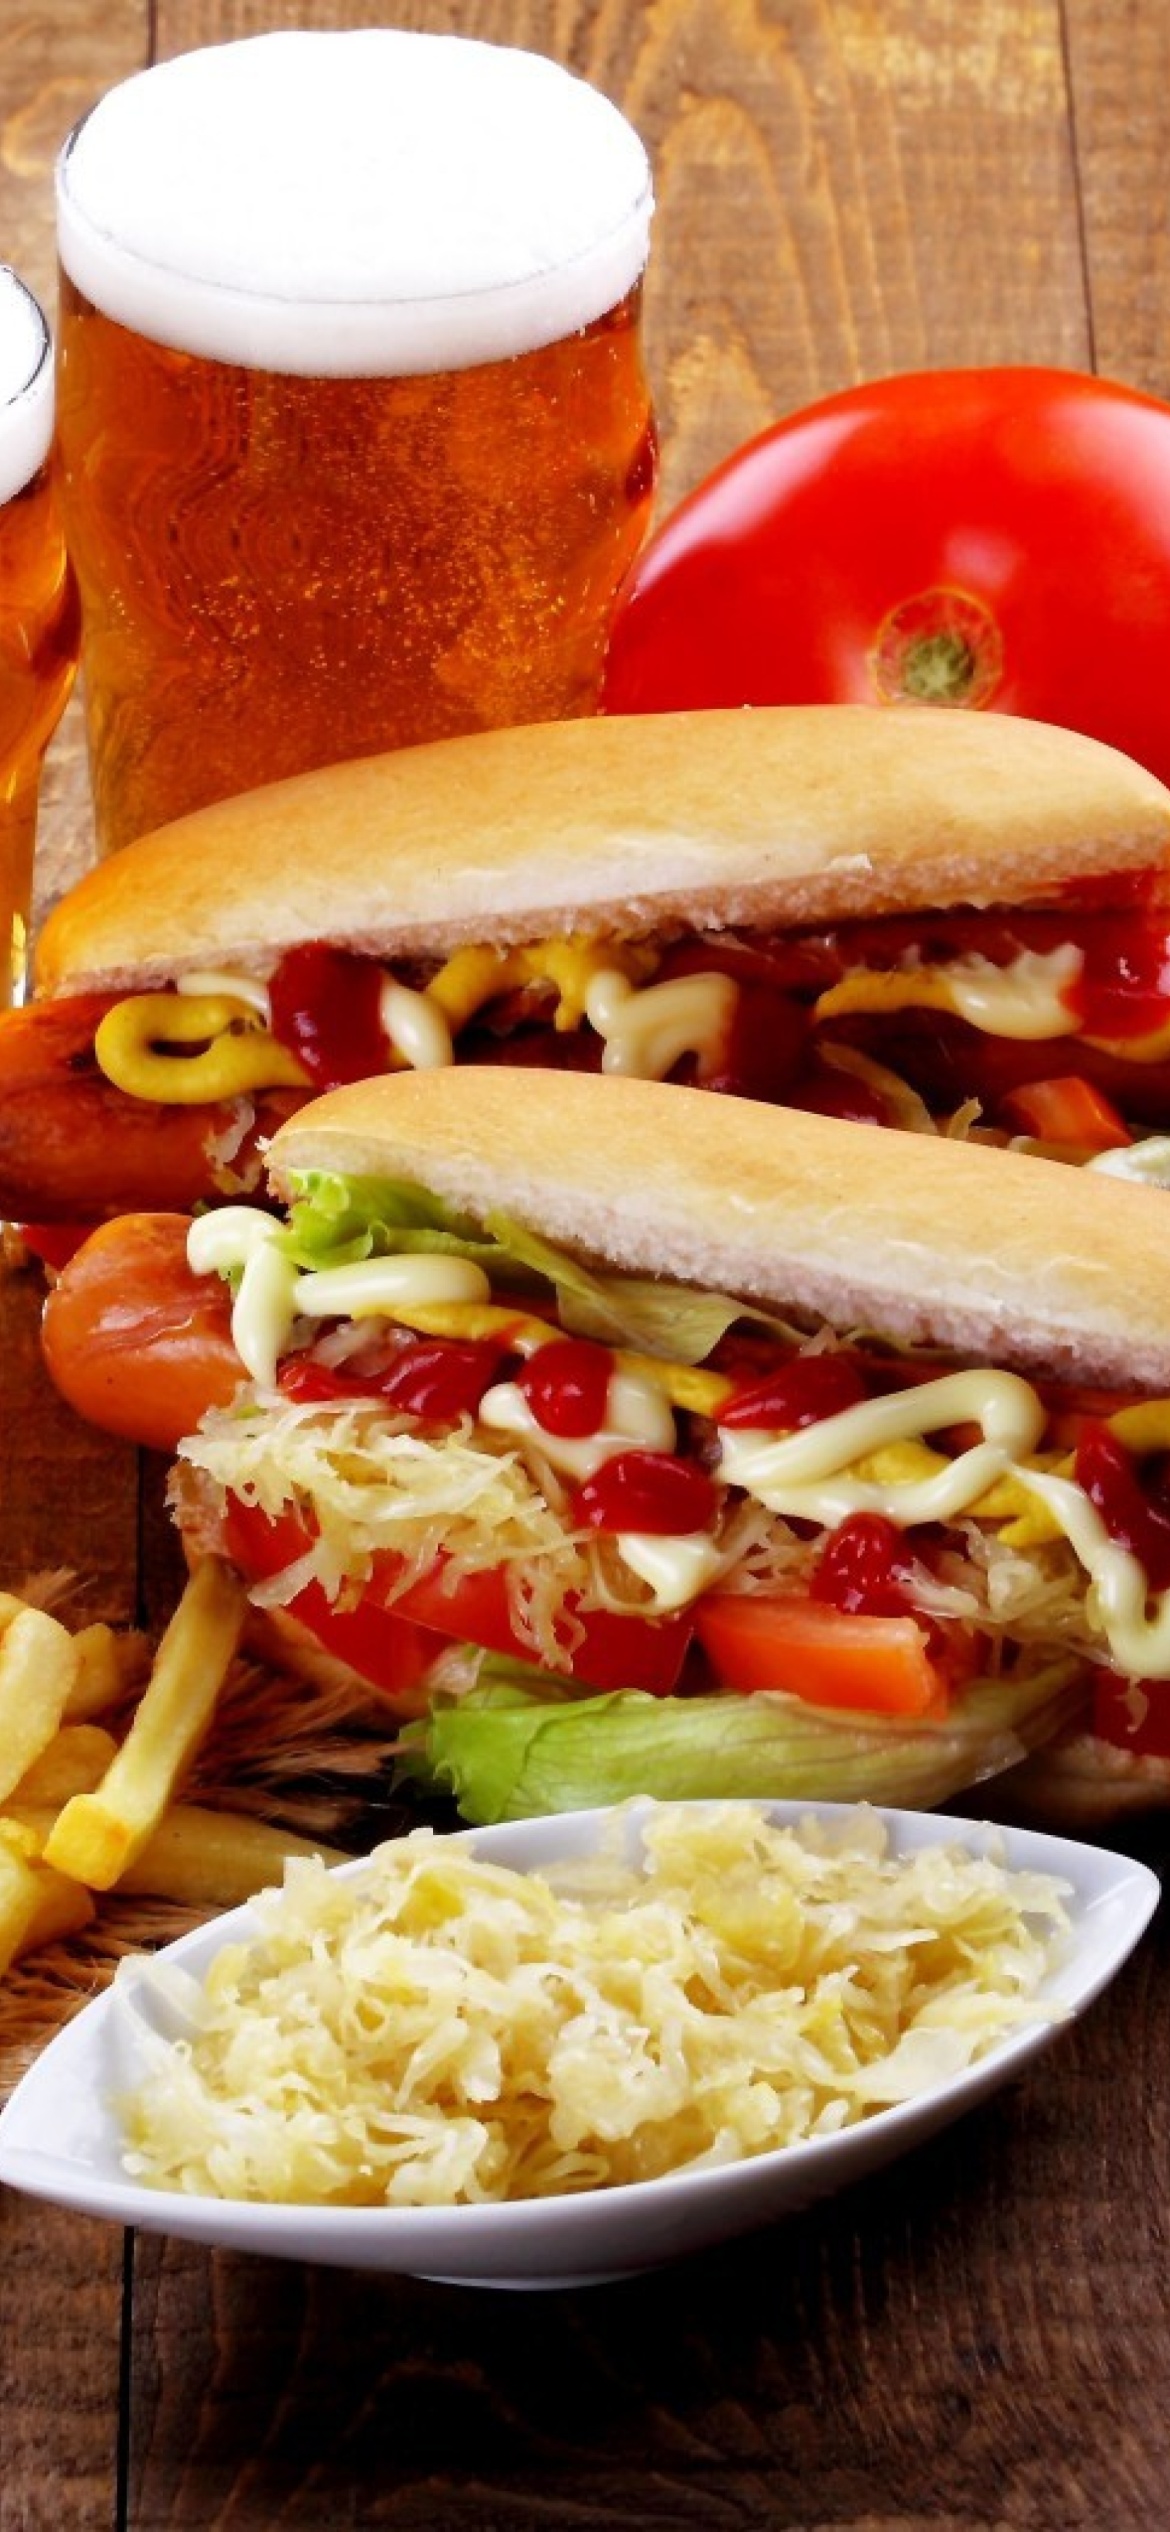 Das Hot Dog Sandwich Wallpaper 1170x2532